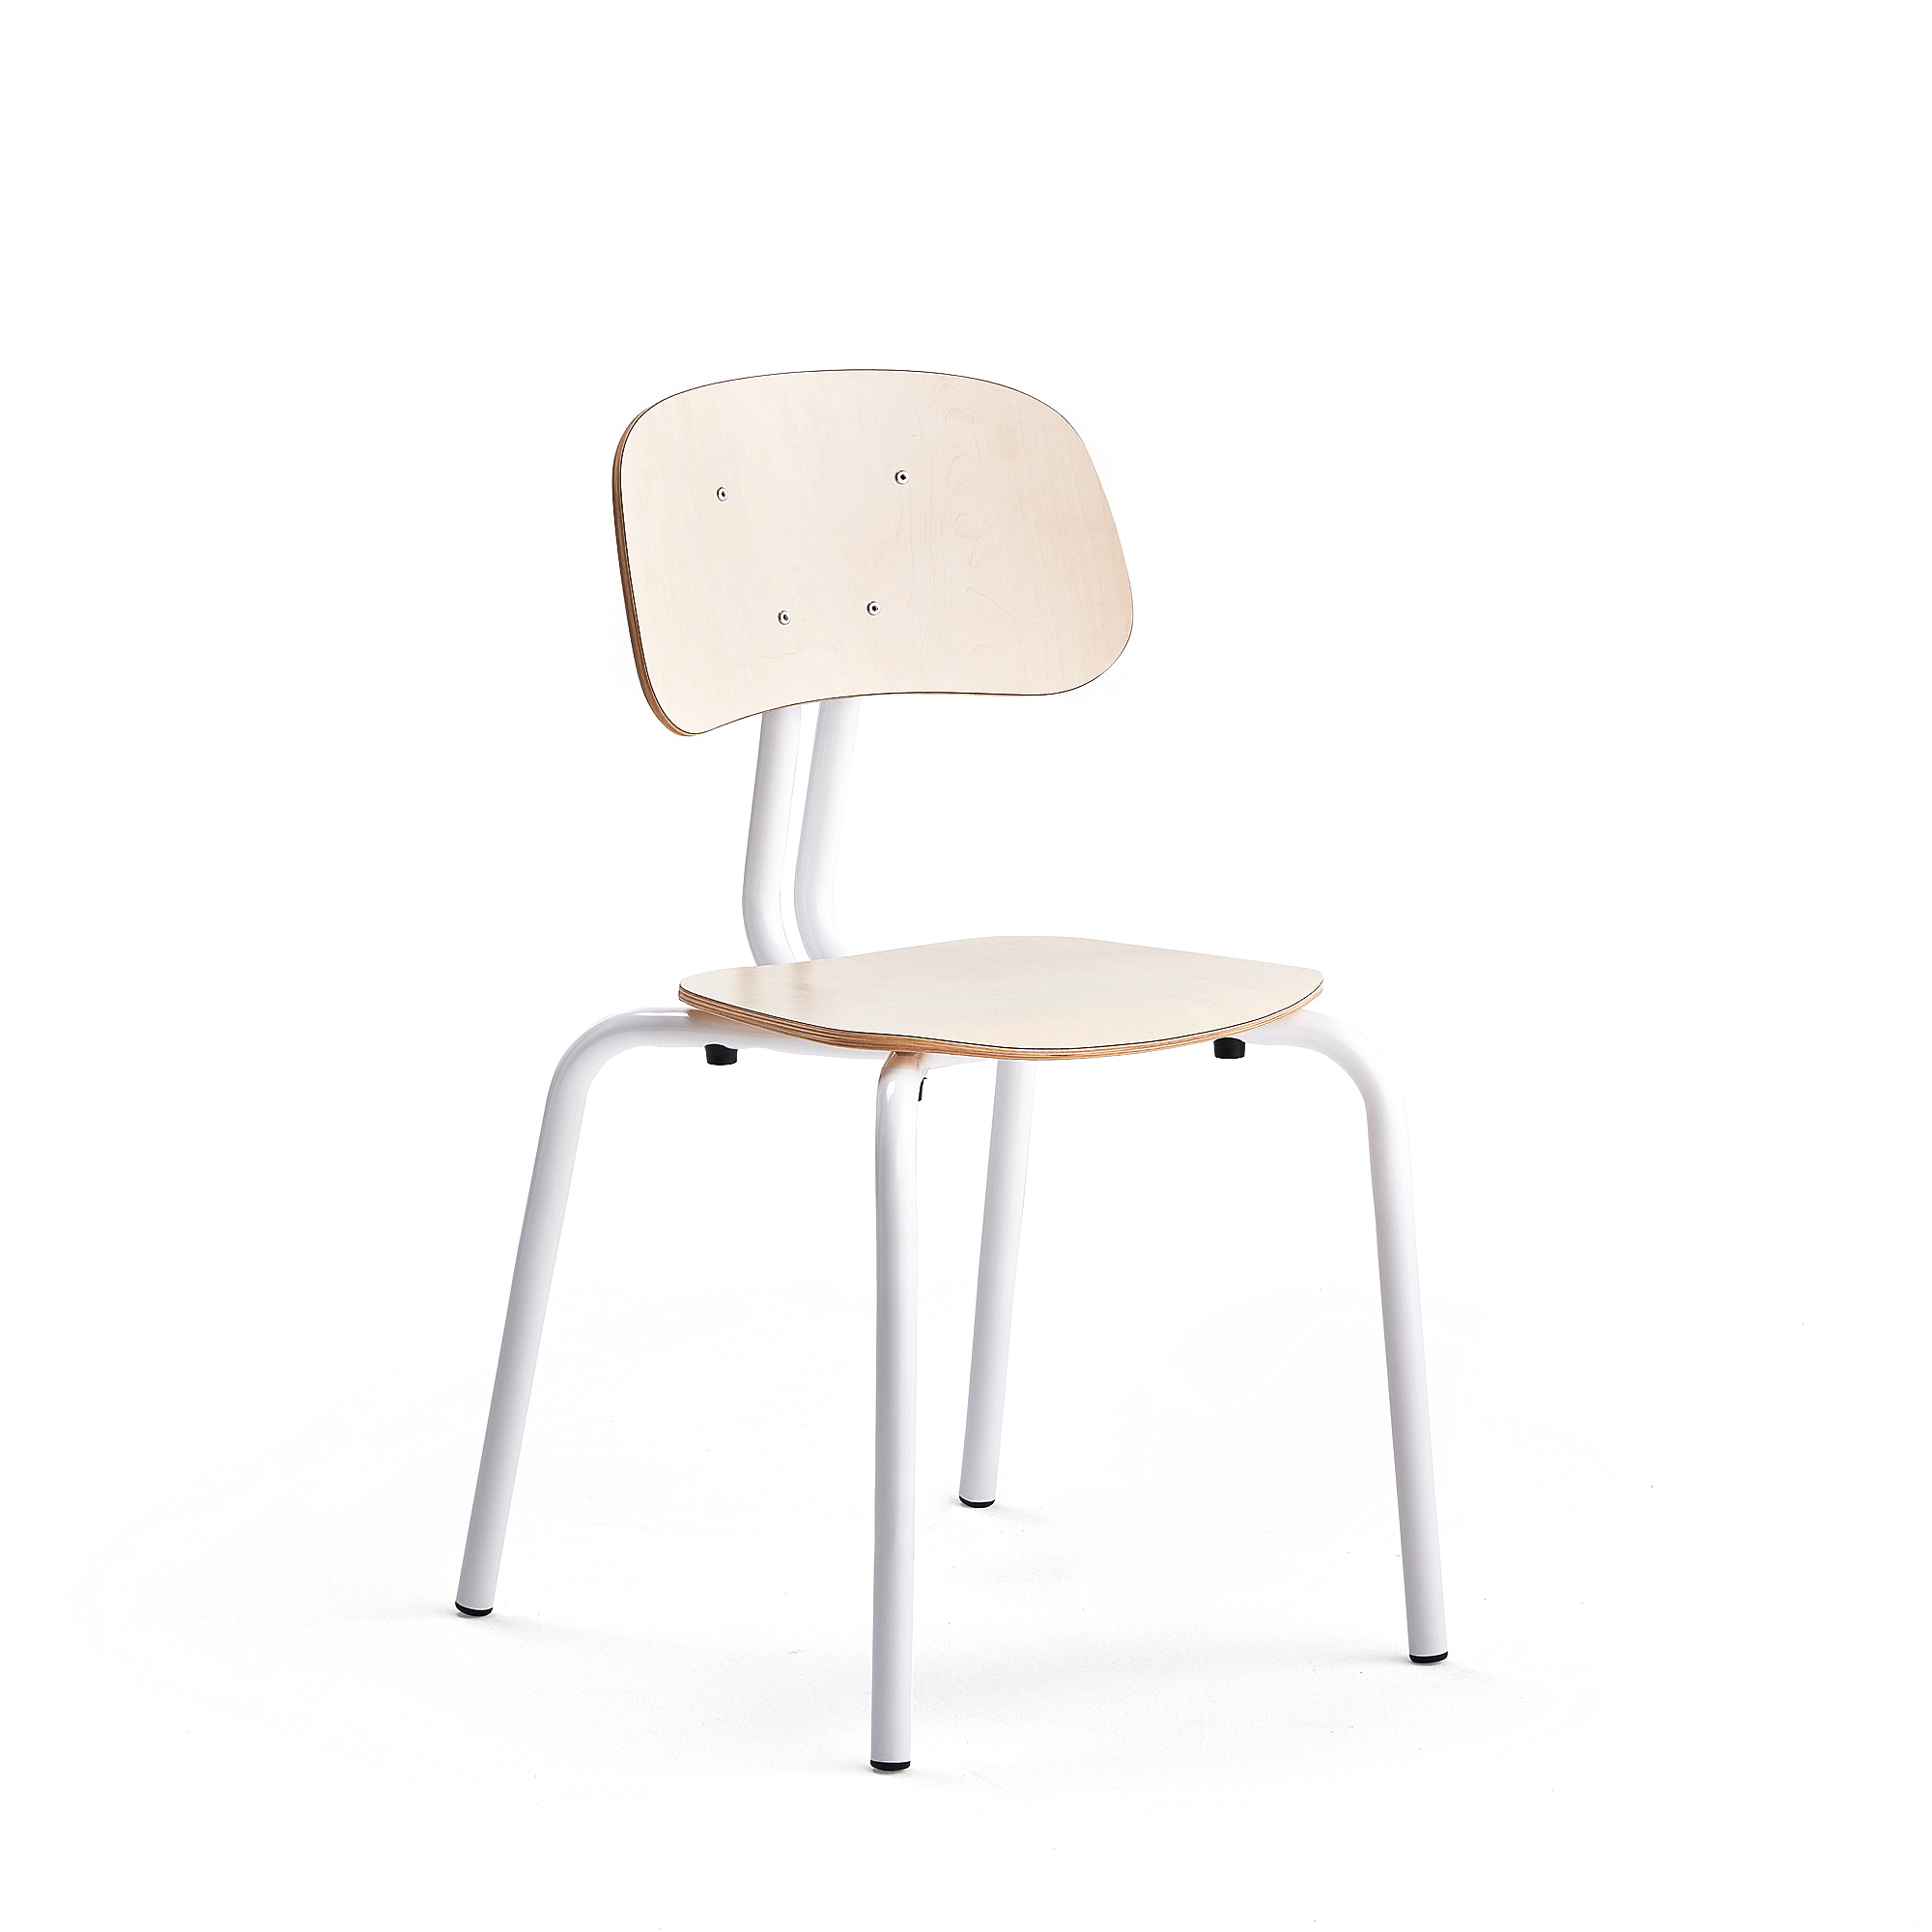 Školní židle YNGVE, 4 nohy, výška 460 mm, bílá/bříza